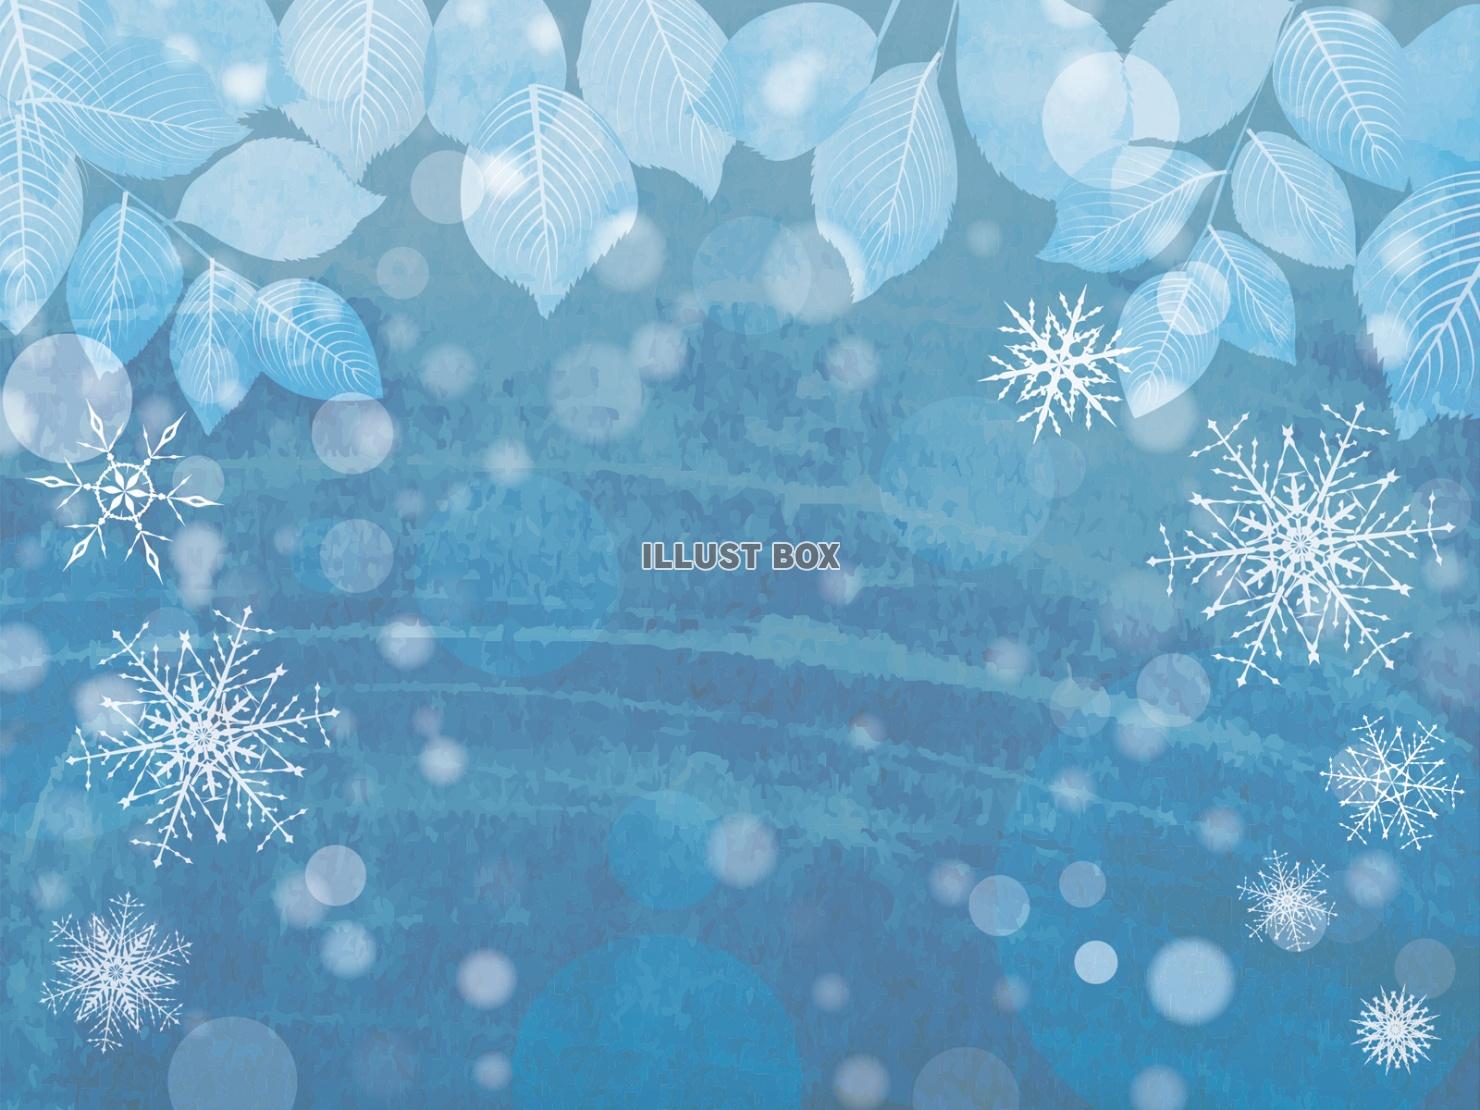 無料イラスト 雪の結晶冬空葉っぱ植物キラキラ風景ロマンチック青光12月1月